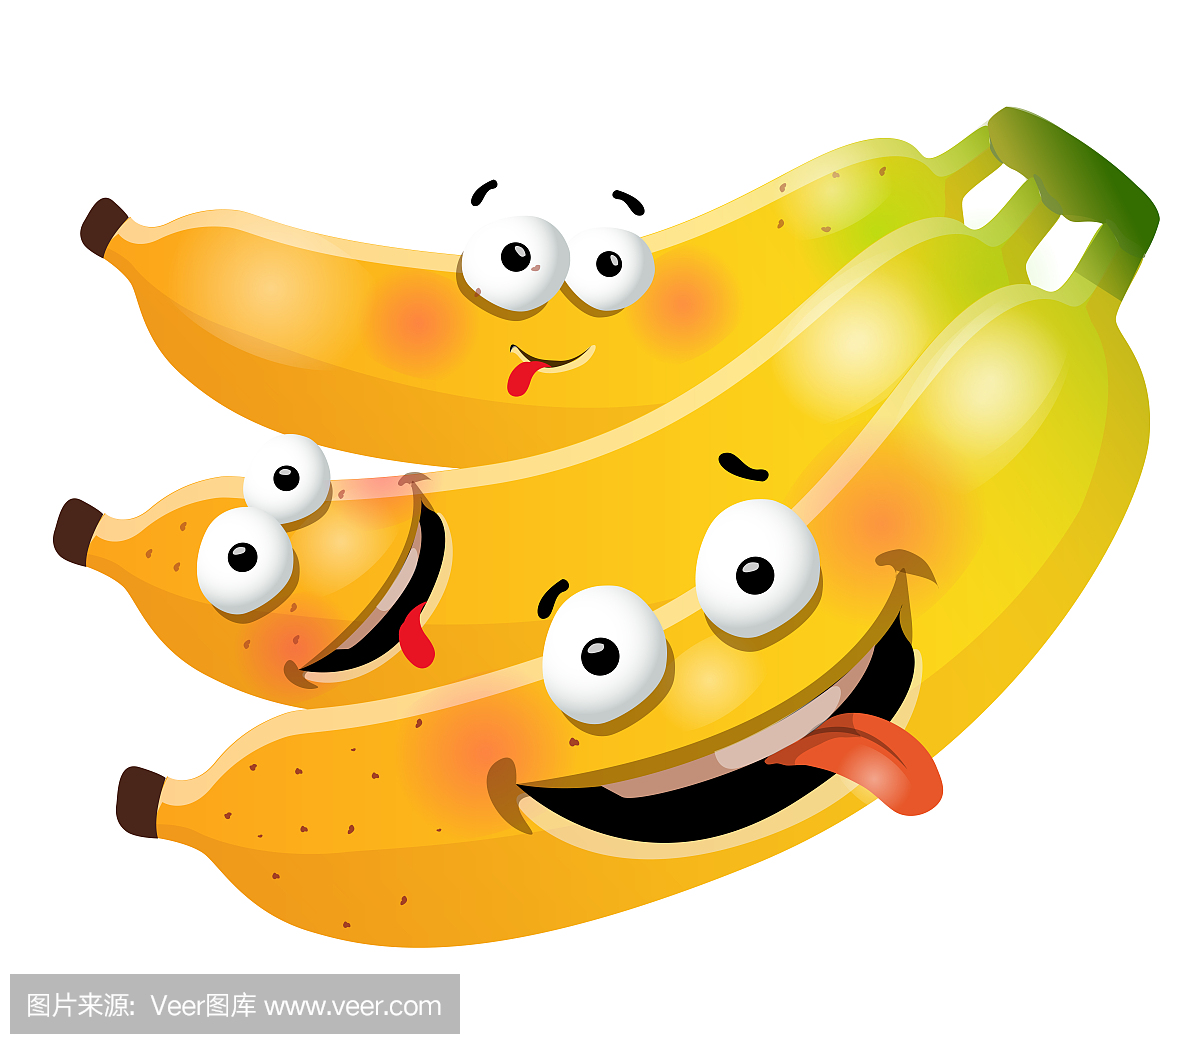 有趣的可爱束香蕉卡通人物。矢量插图,孤立,剪